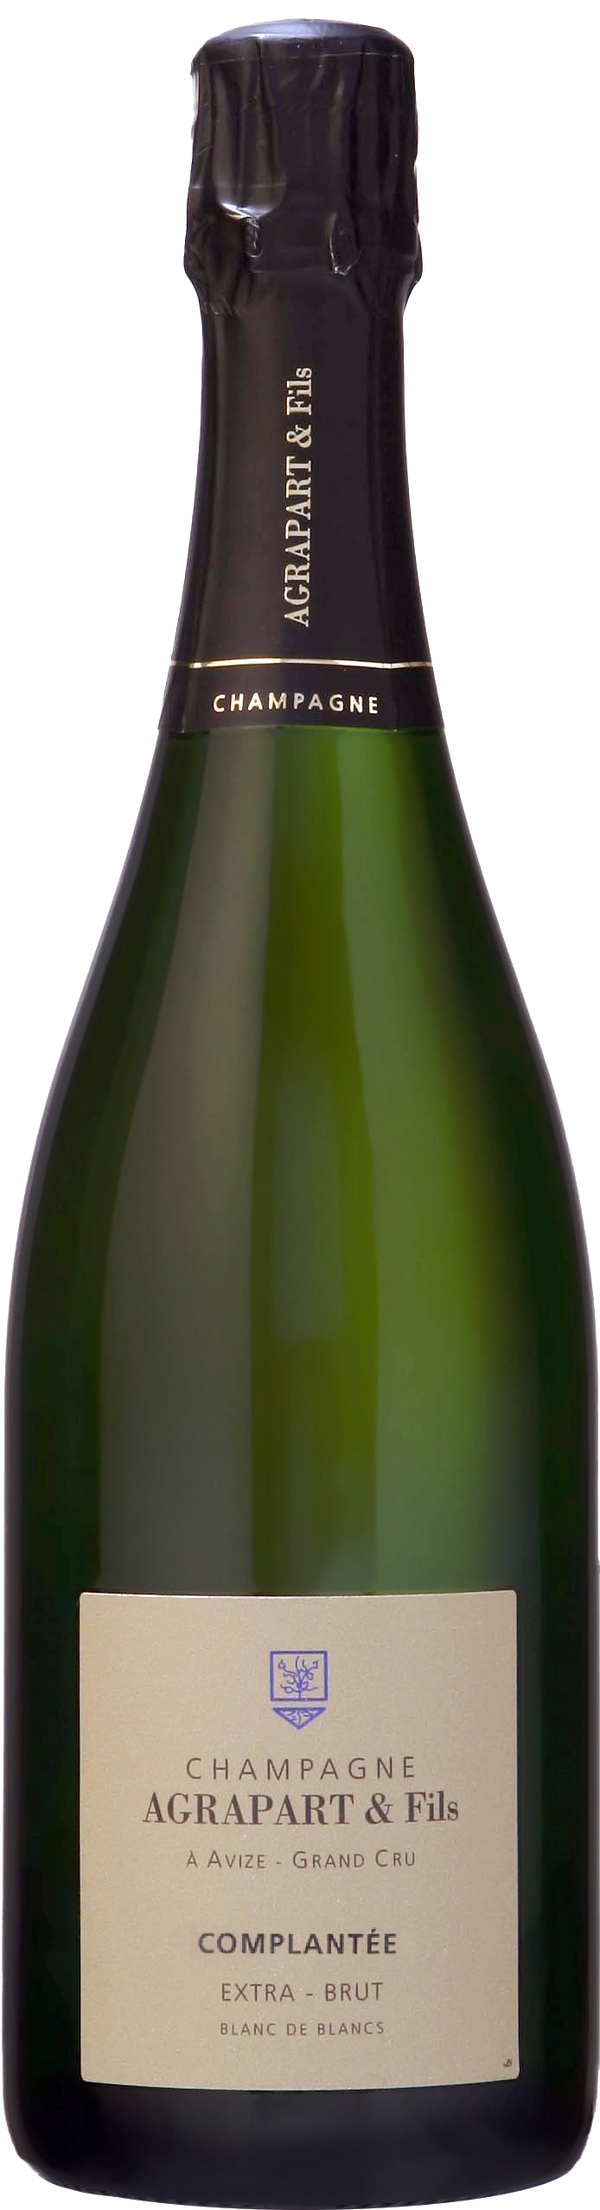 Champagne Pascal Agrapart Grand Cru Complantée NV (Base 20 Disg. Jun 23)